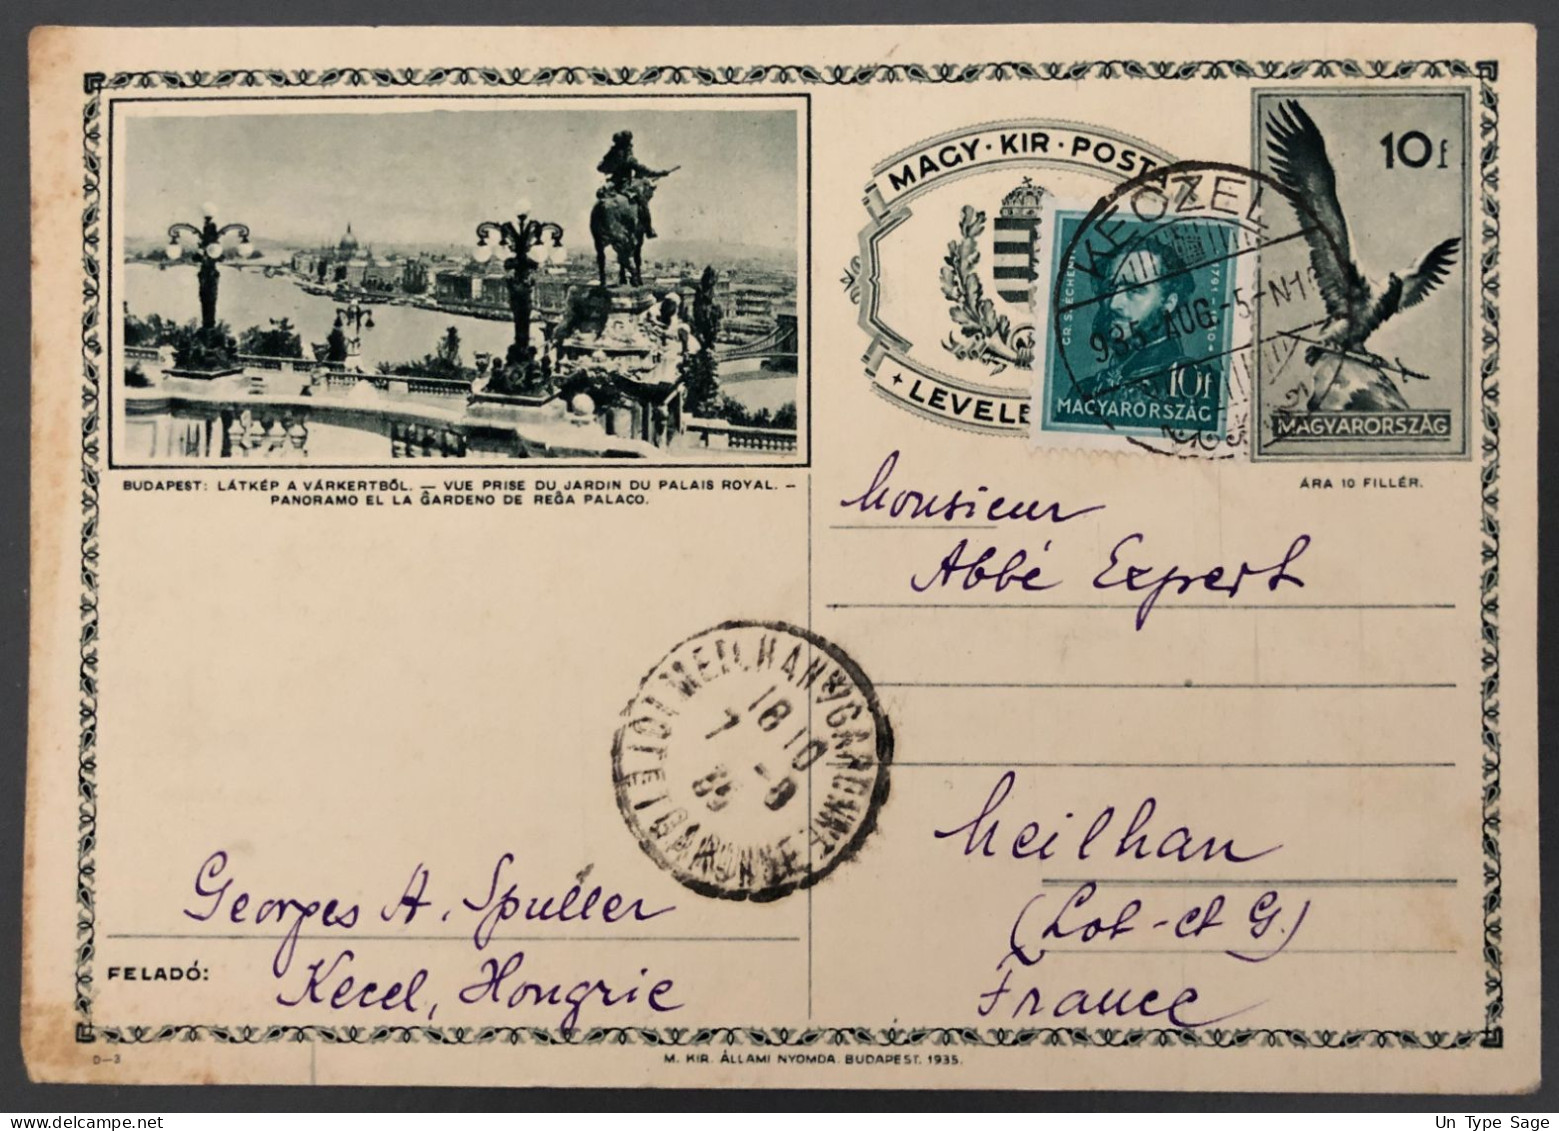 Hongrie Entier-carte - De KEOZEL 5.8.1935 - (A1756) - Postal Stationery